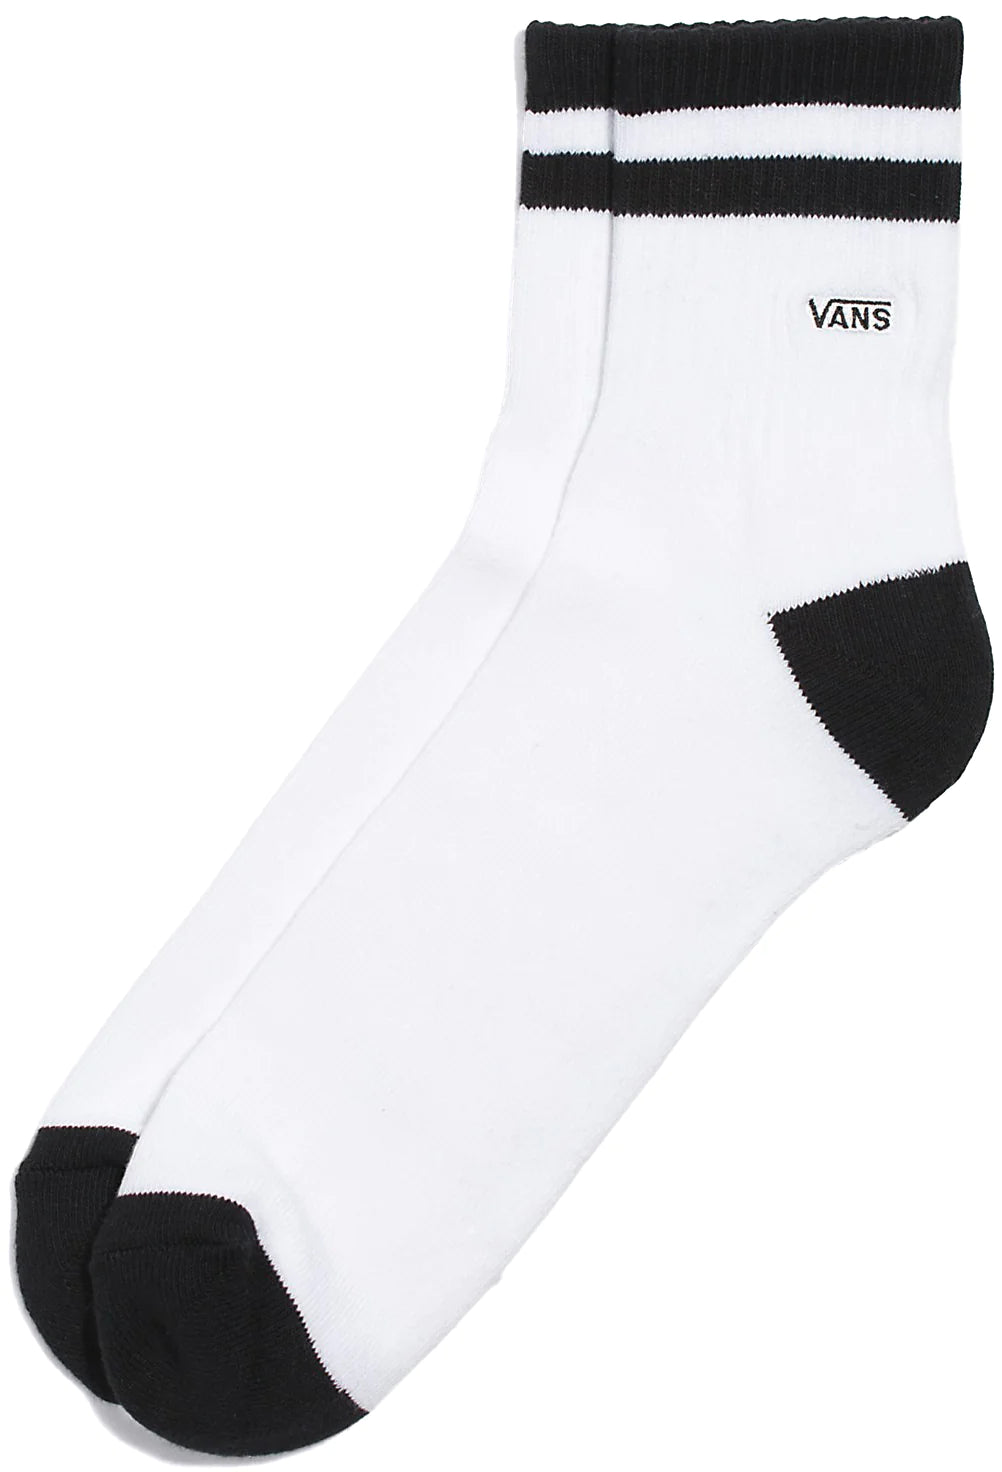 Vans - Half Crew Socks (9.5-13) in White/Black